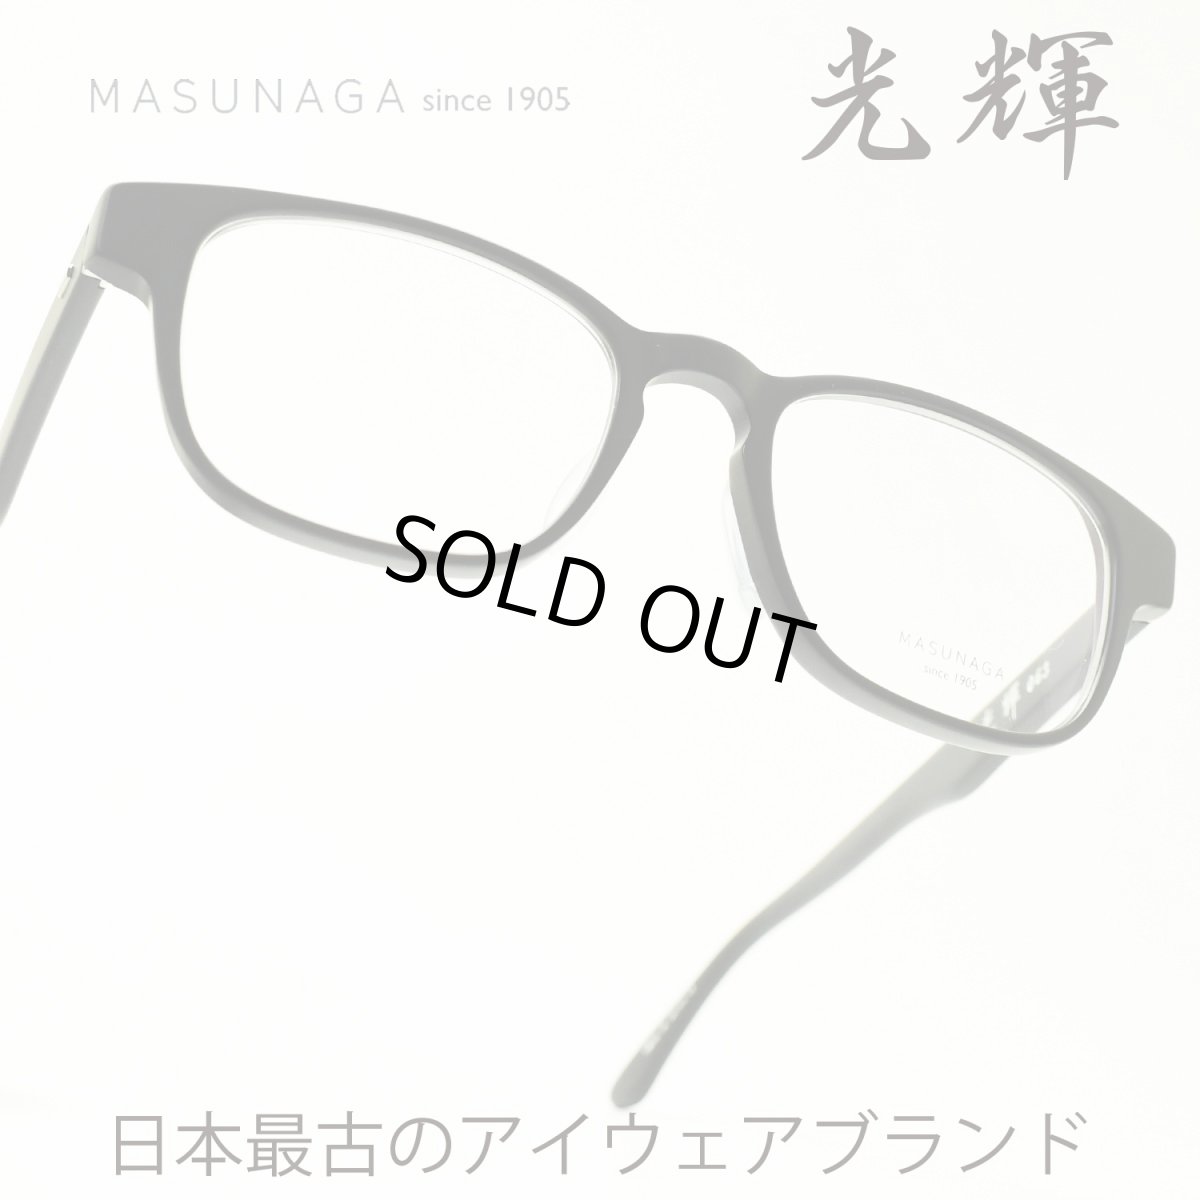 画像1: 増永眼鏡 MASUNAGA 光輝 063 col-49 BLACK MATTE メガネ 眼鏡 めがね メンズ レディース おしゃれ ブランド 人気 おすすめ フレーム 流行り 度付き レンズ (1)